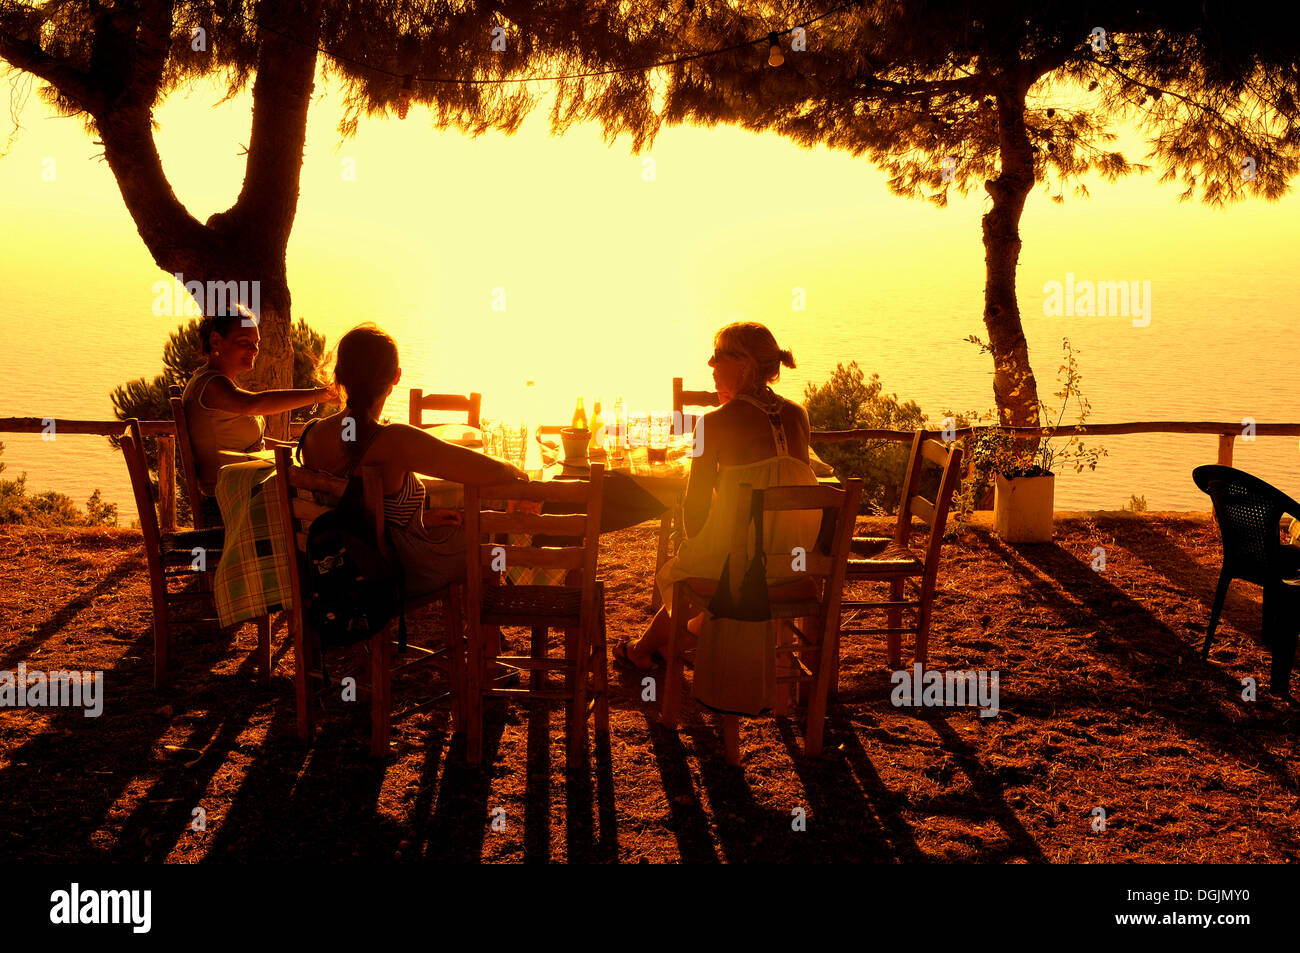 Drei Frauen sitzen an einem Tisch bei Sonnenuntergang, Abendstimmung im griechischen Meer Garten, Lefkas oder Lefkada, Griechenland, Europa Stockfoto